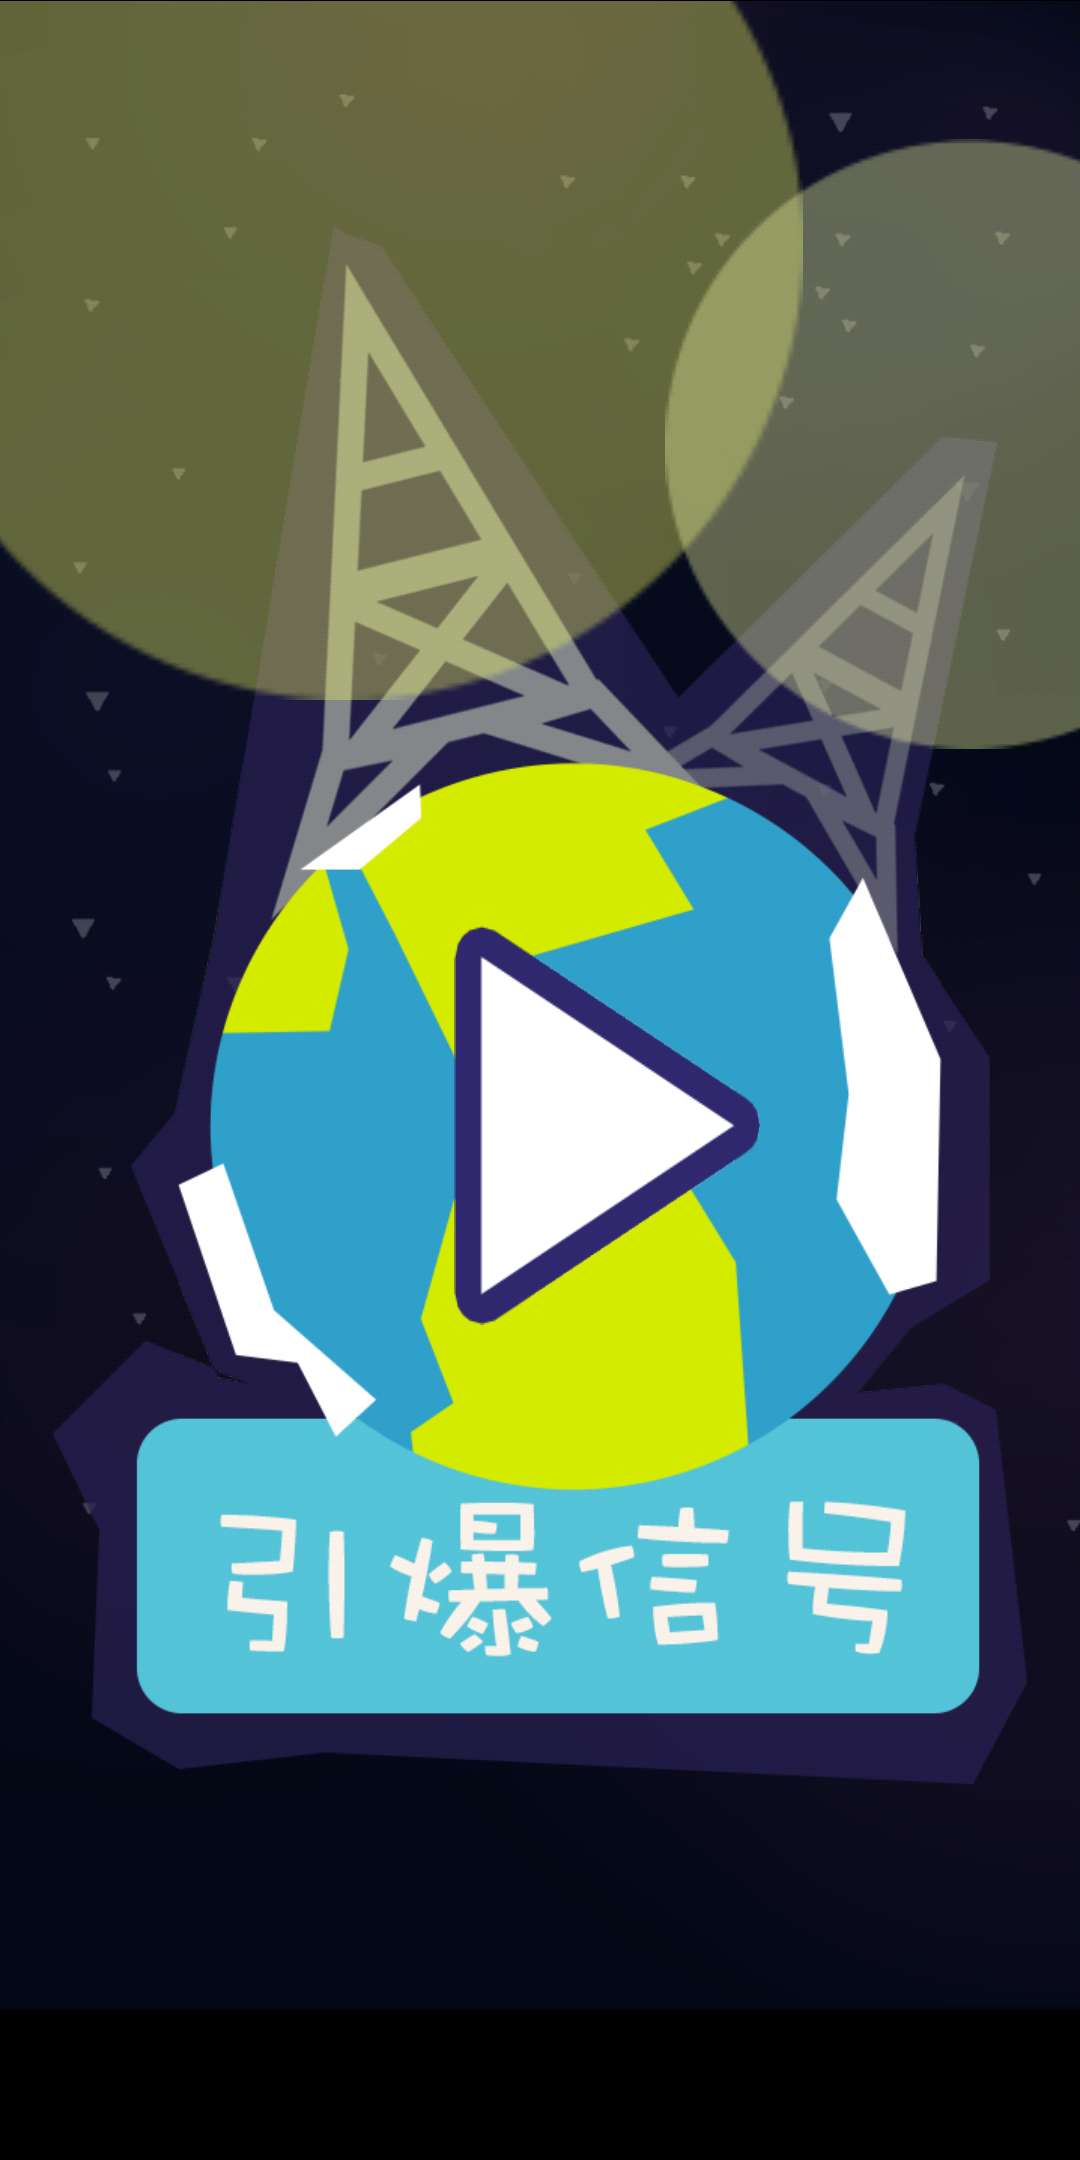 最近在参加了GlobalGameJam做了个小游戏《引爆信号》^^